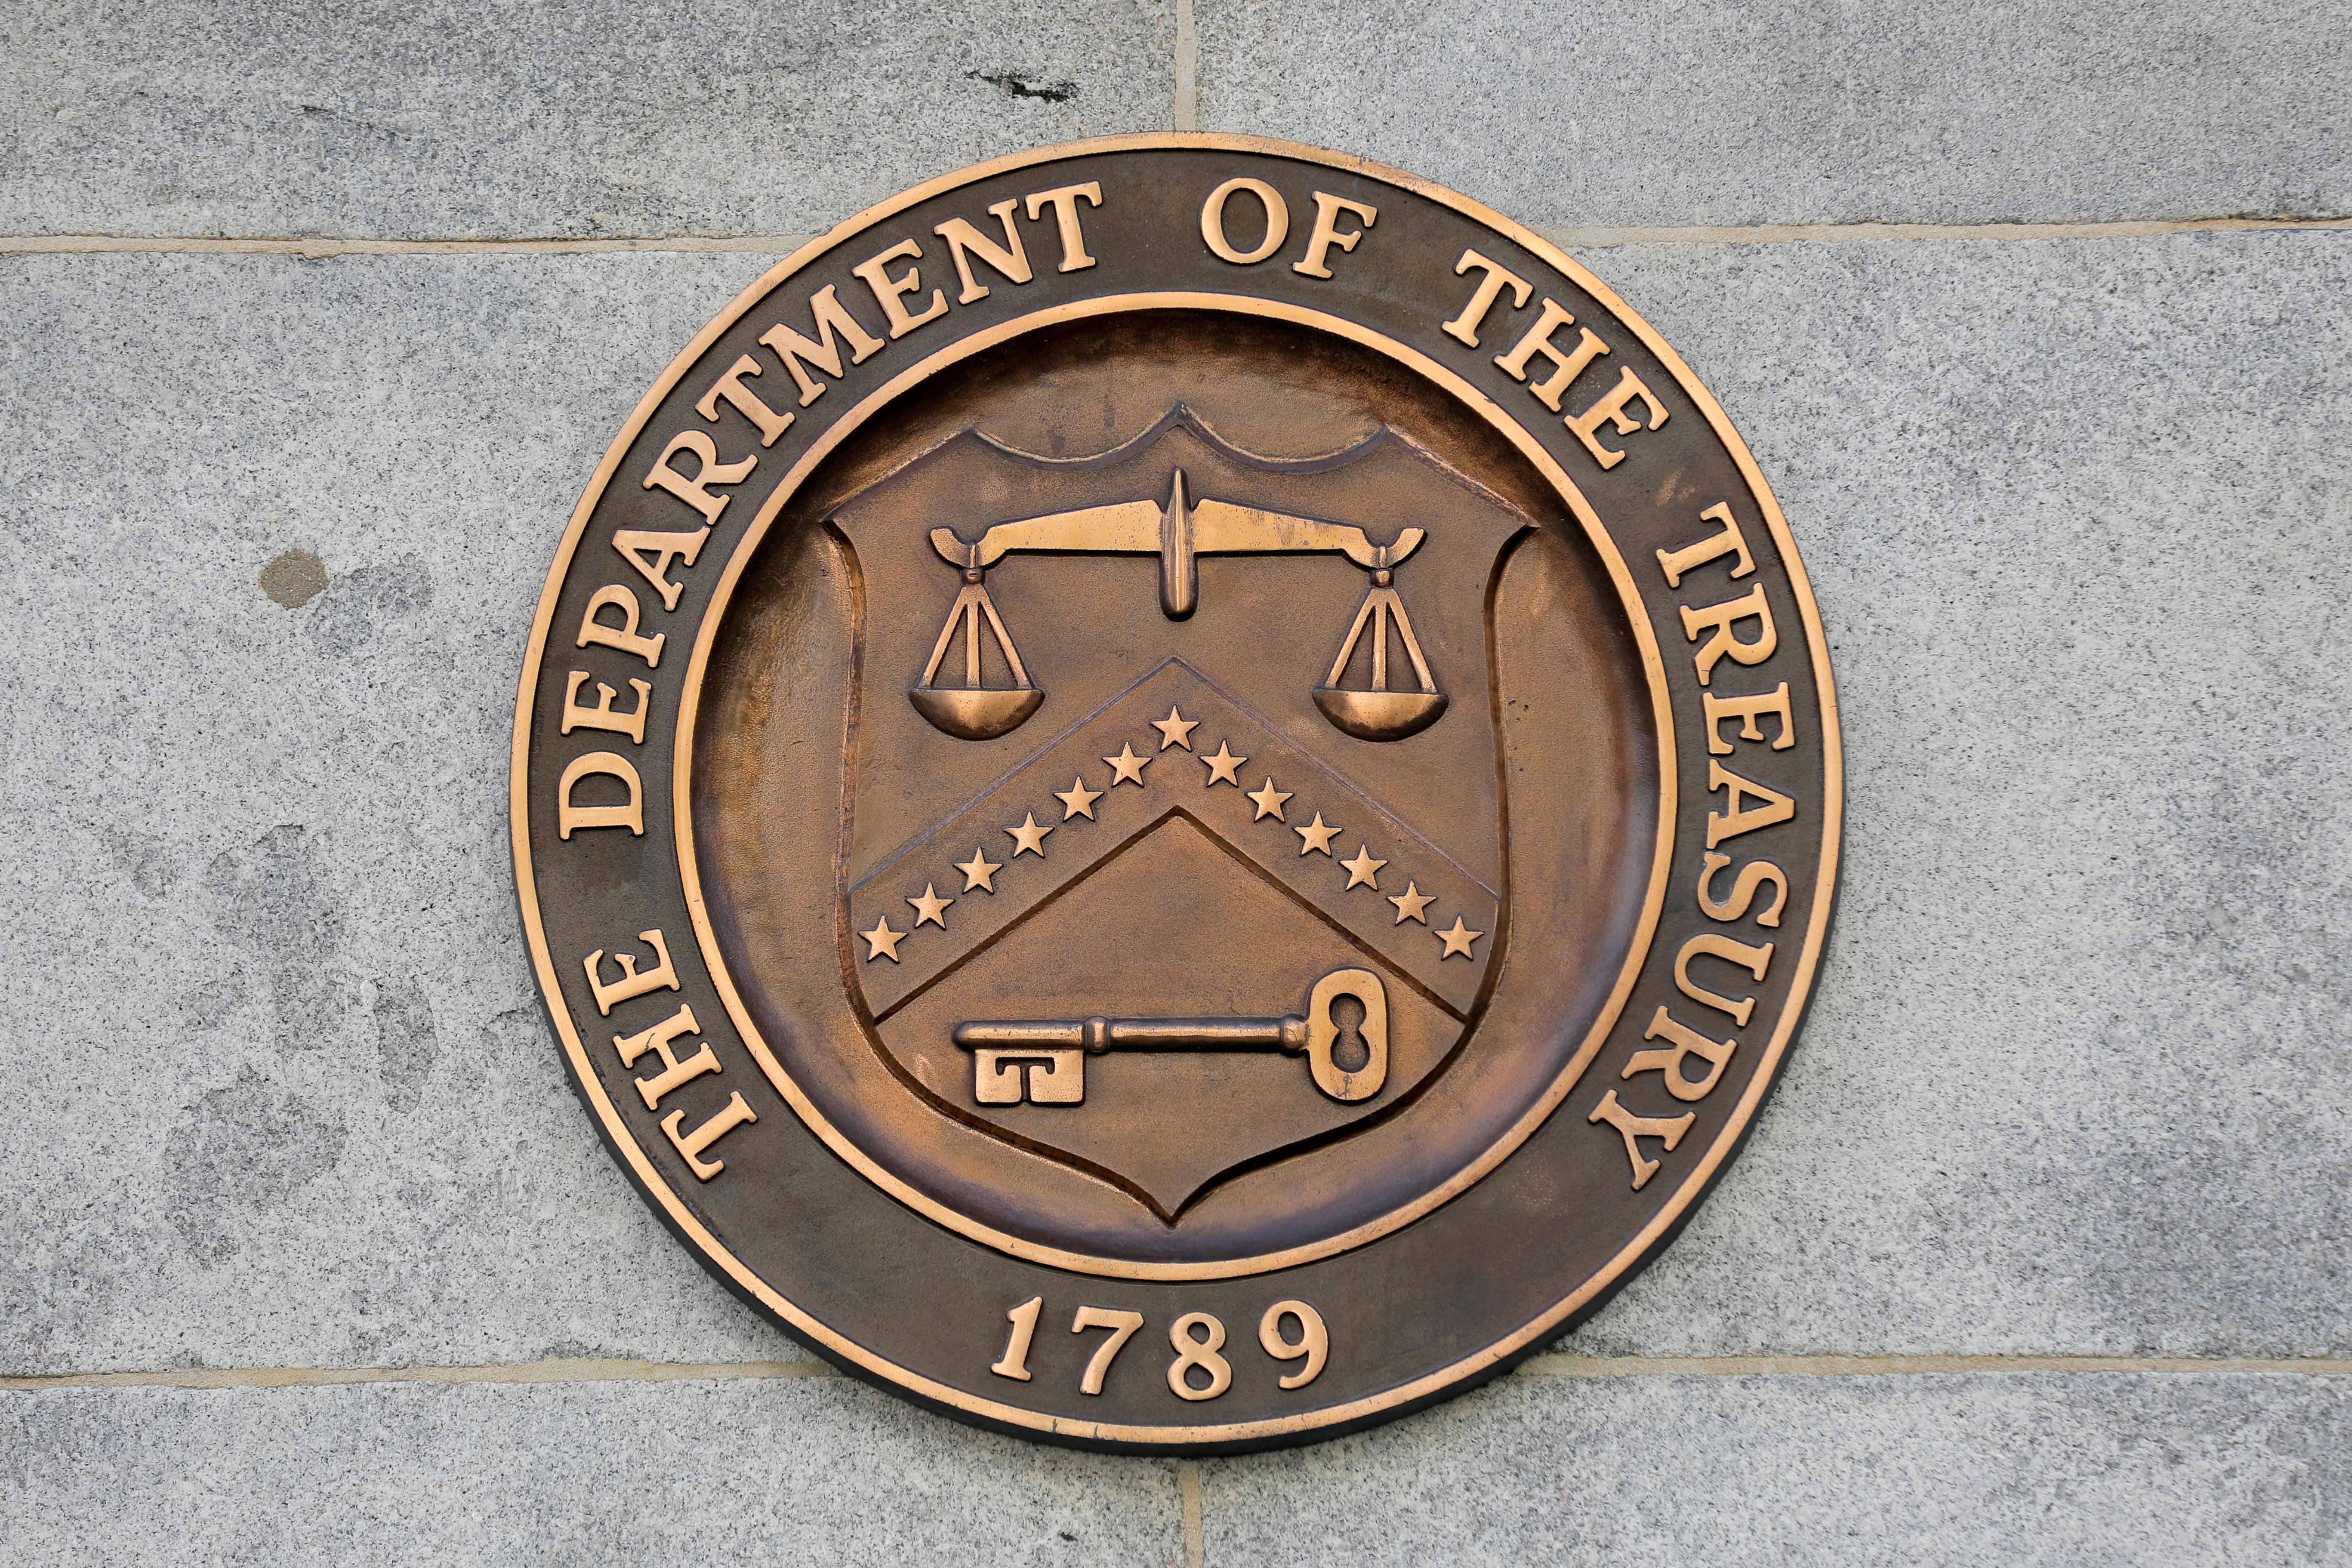 Foto de archivo de una señalización en la sede del Departamento del Tesoro de Estados Unidos en Washington, D.C. (REUTERS/Andrew Kelly)